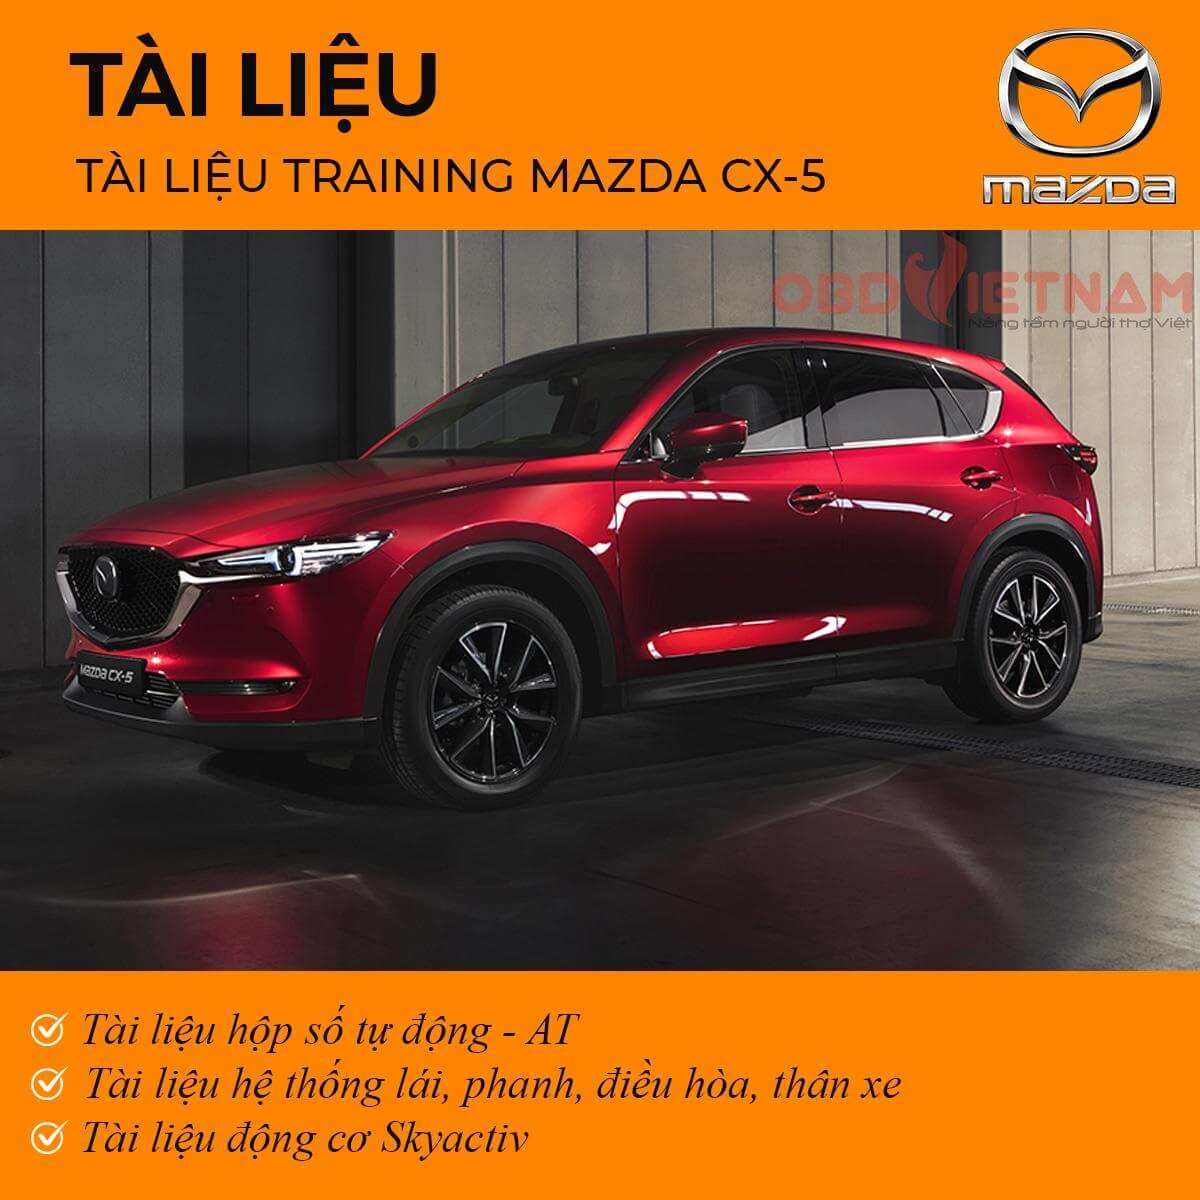 Tài liệu training Mazda CX5